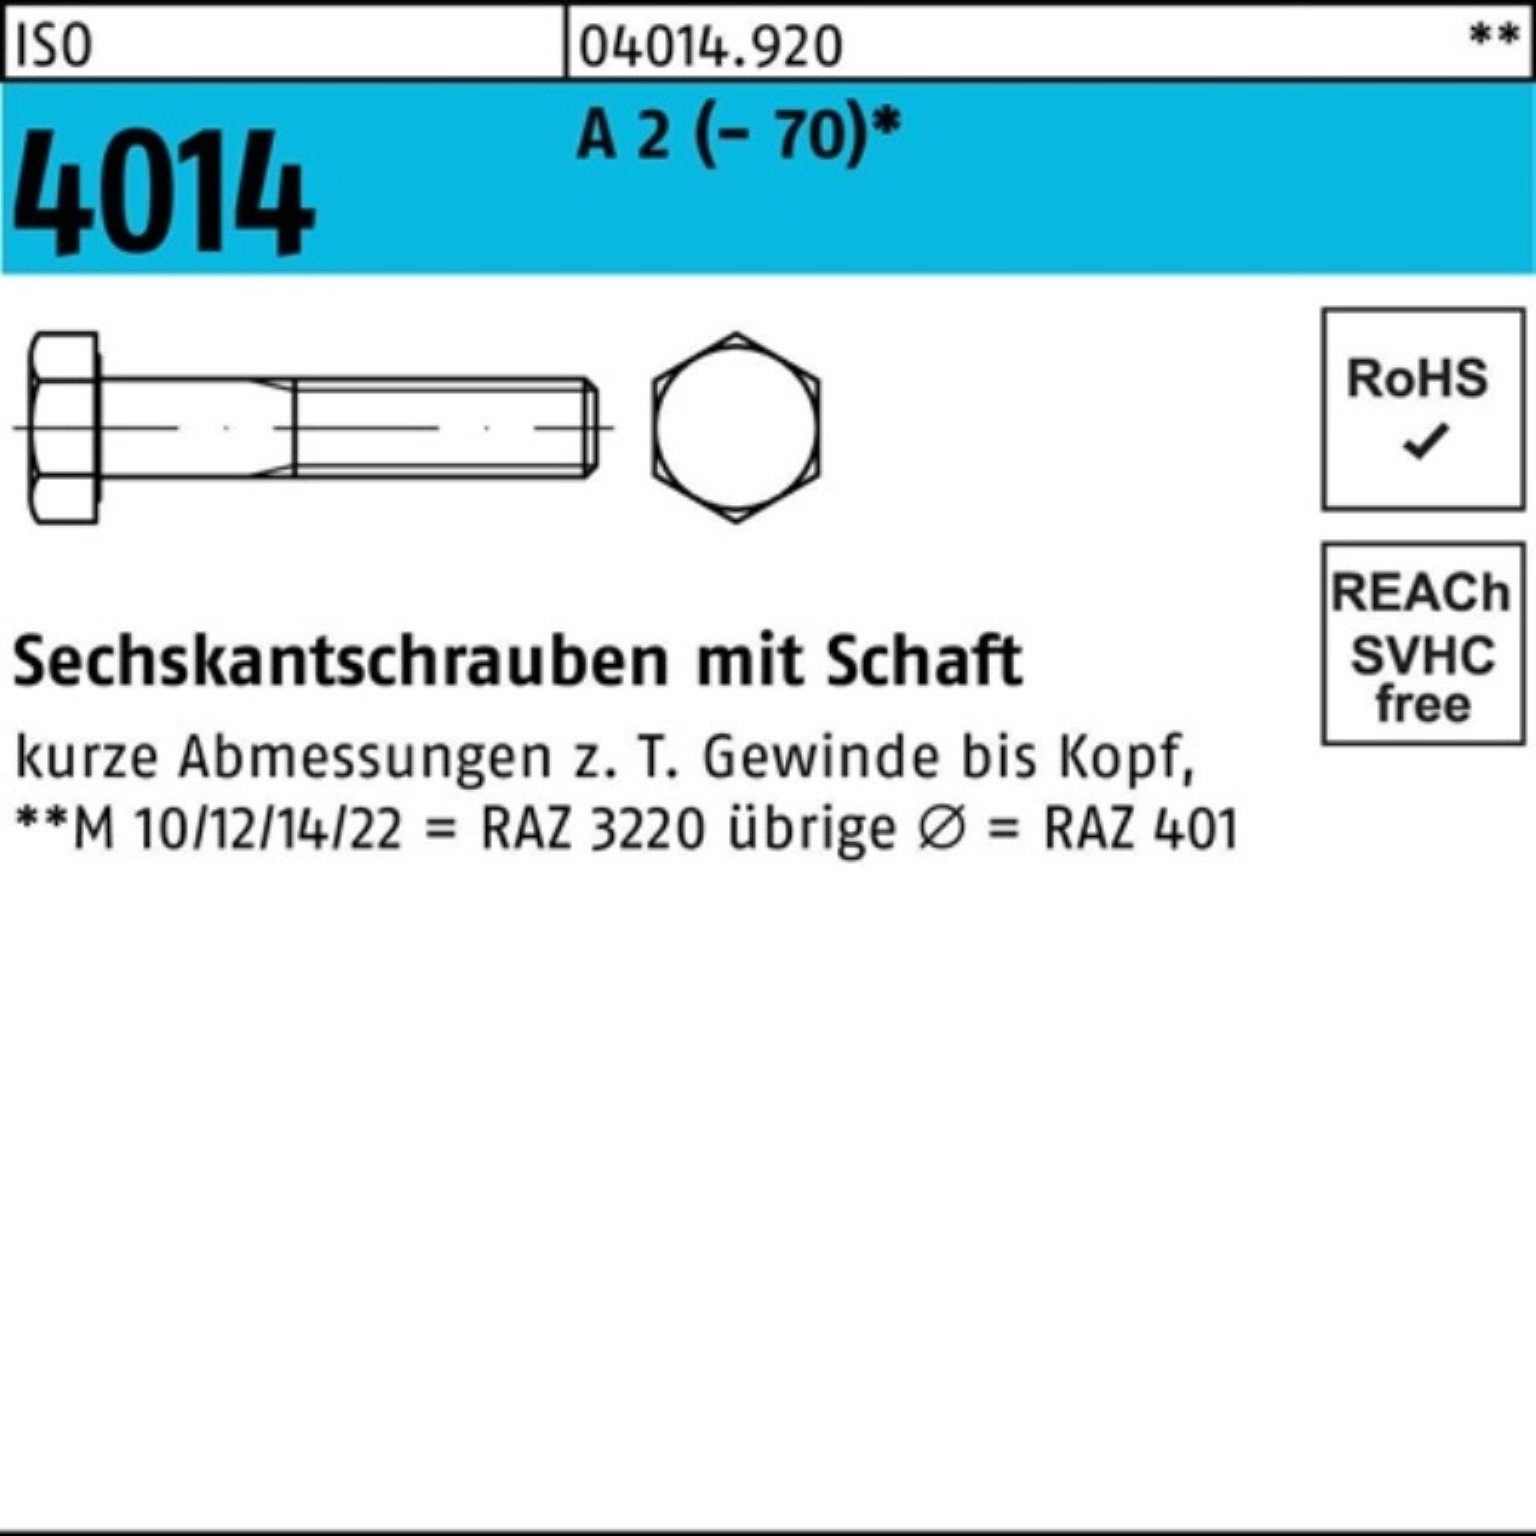 Bufab Sechskantschraube 100er Pack Sechskantschraube ISO 4014 Schaft M6x 130 A 2 (70) 50 St